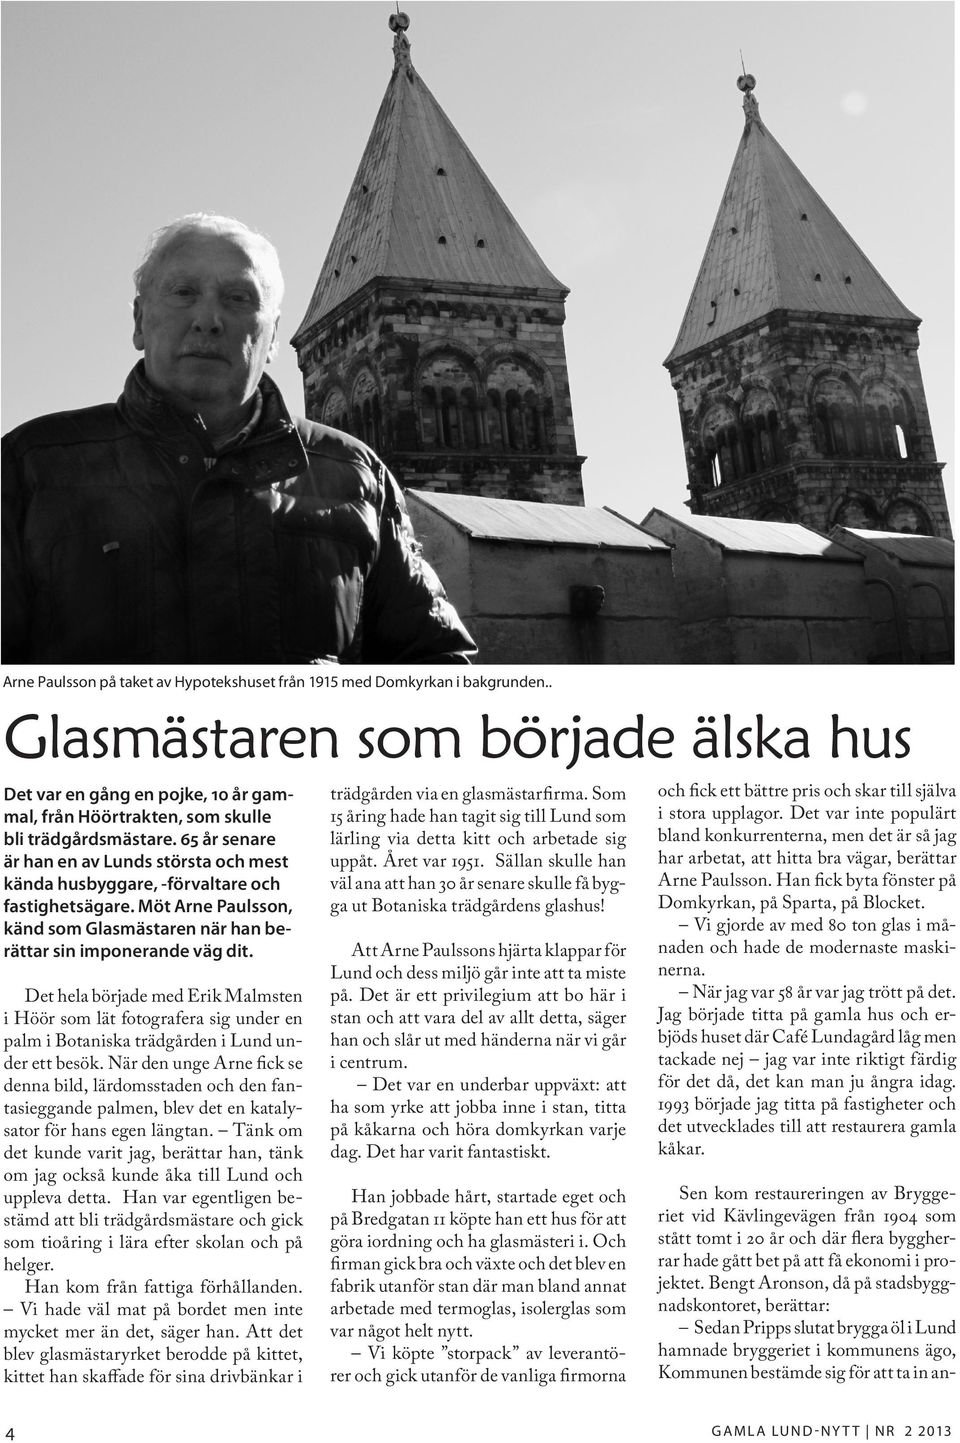 65 år senare är han en av Lunds största och mest kända husbyggare, -förvaltare och fastighetsägare. Möt Arne Paulsson, känd som Glasmästaren när han berättar sin imponerande väg dit.